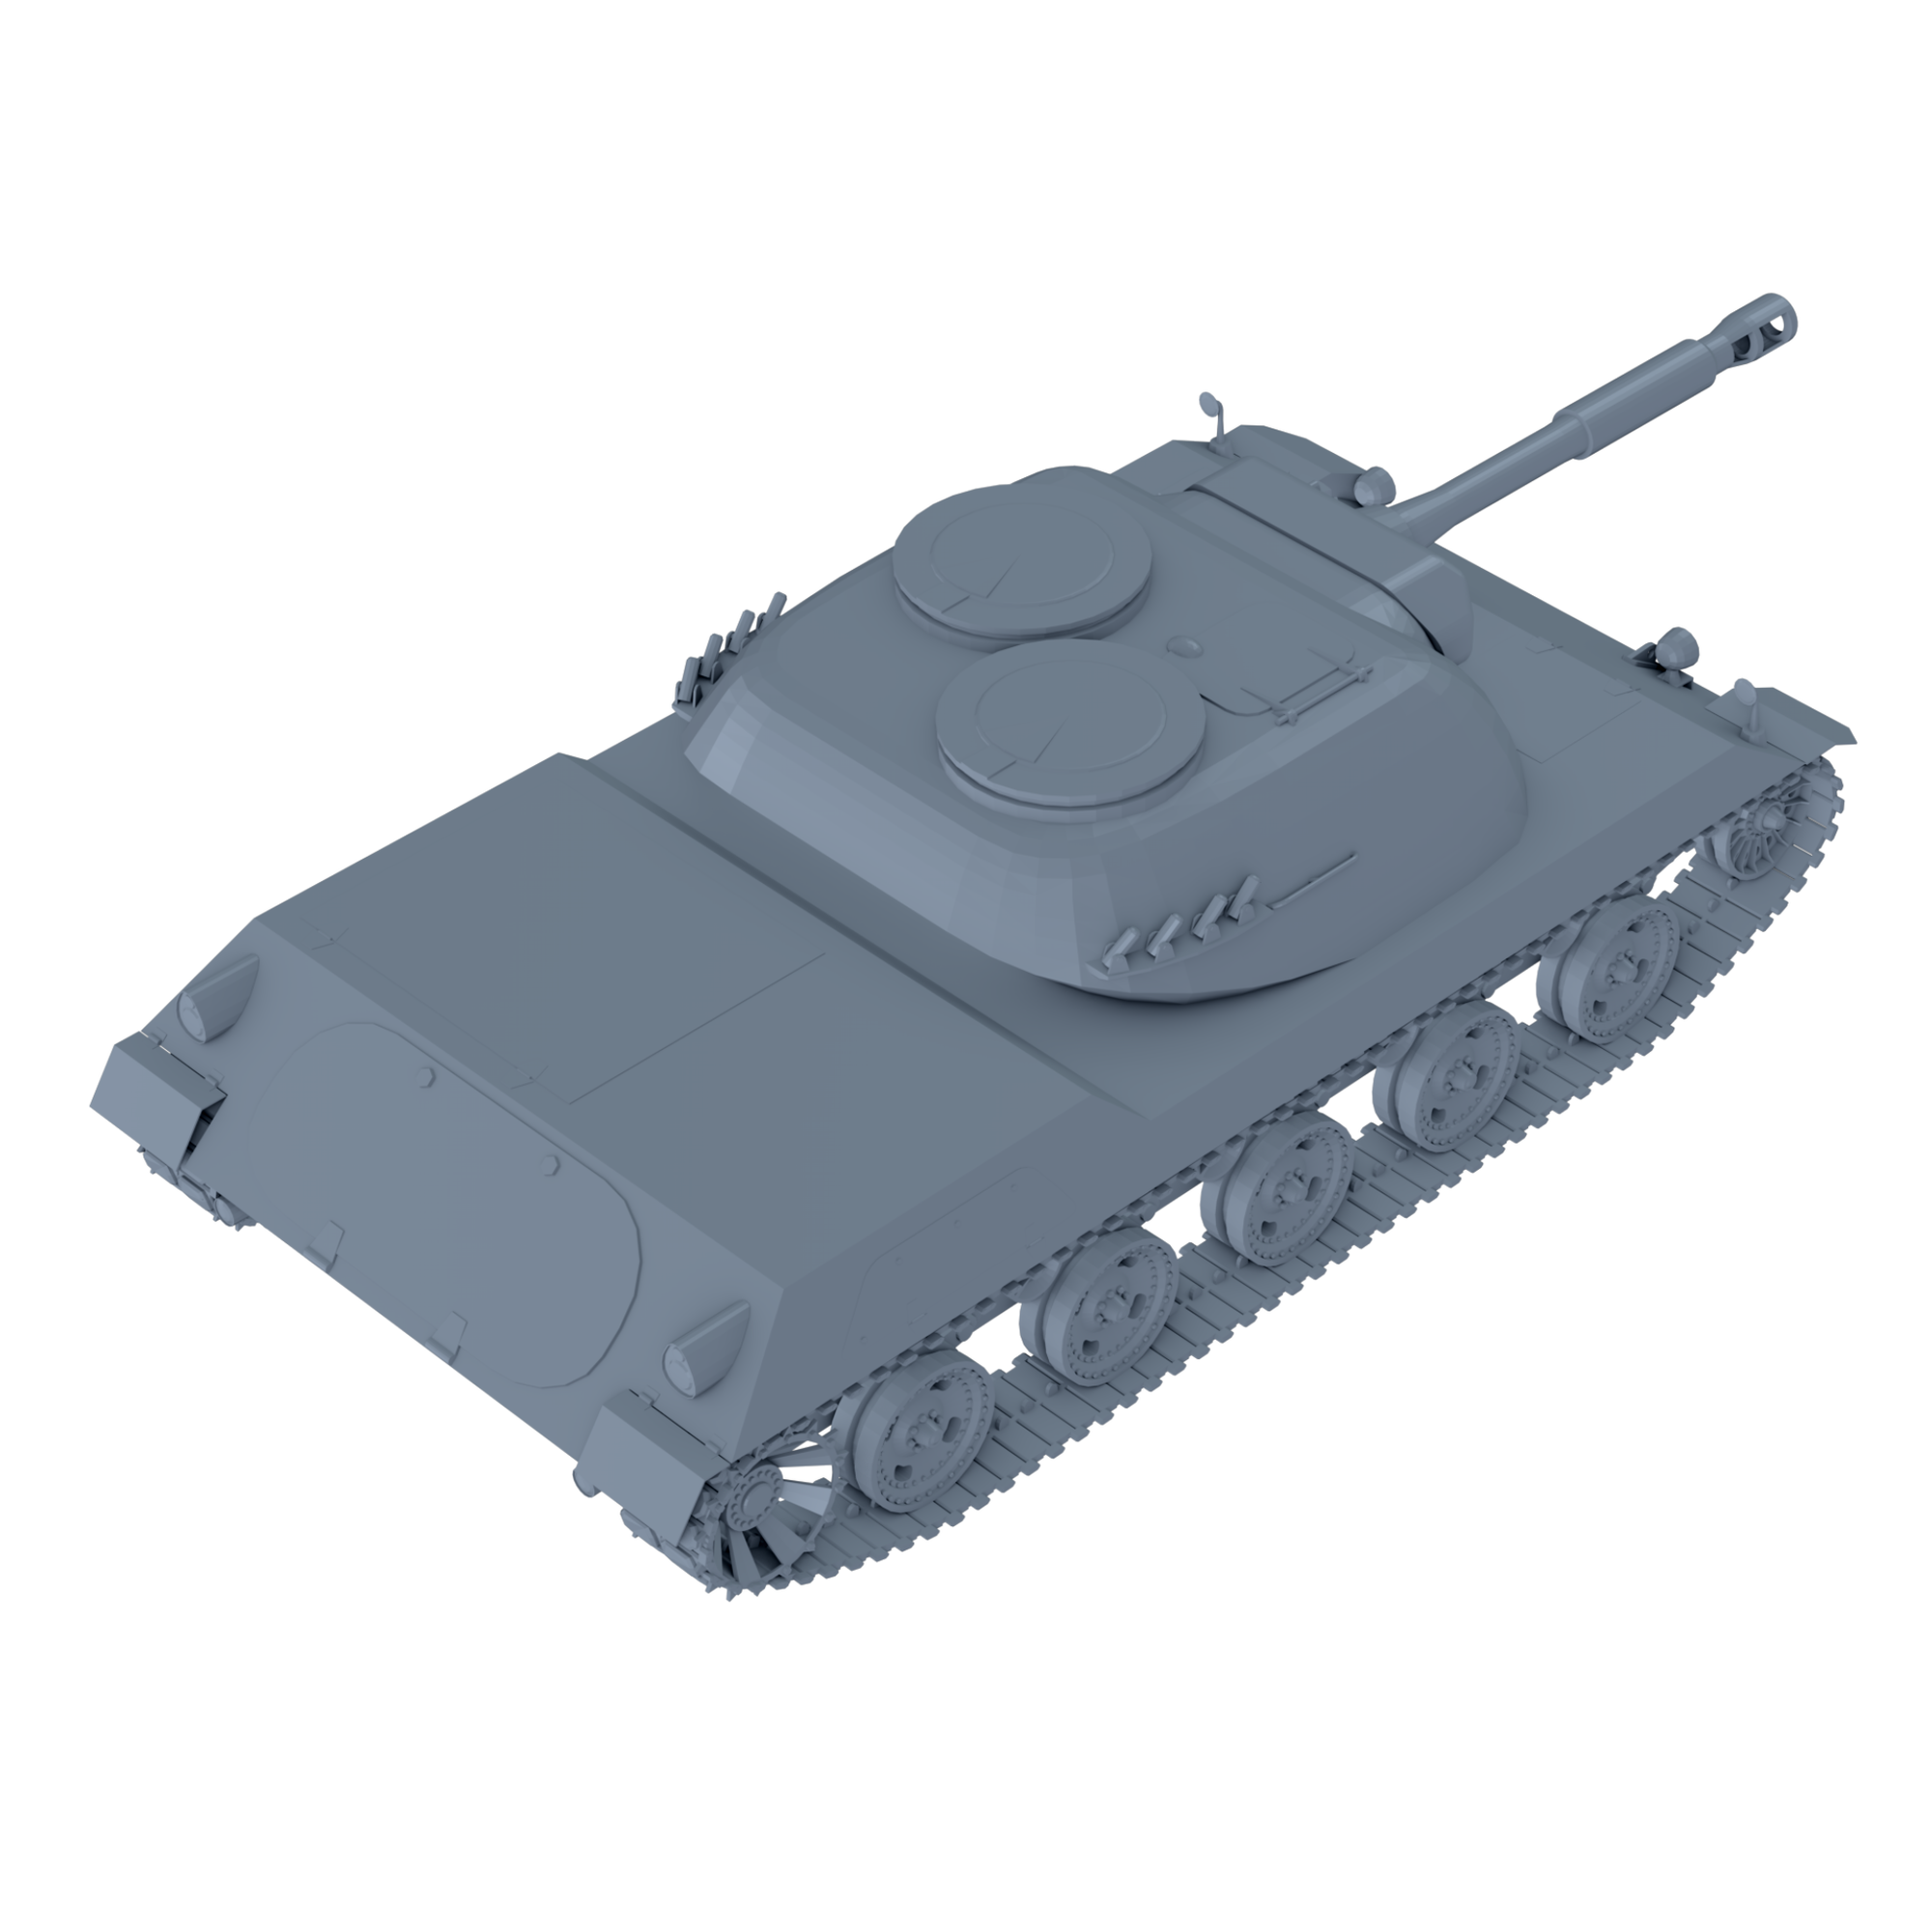 Spahpanzer Ru 251 Rheinmetall